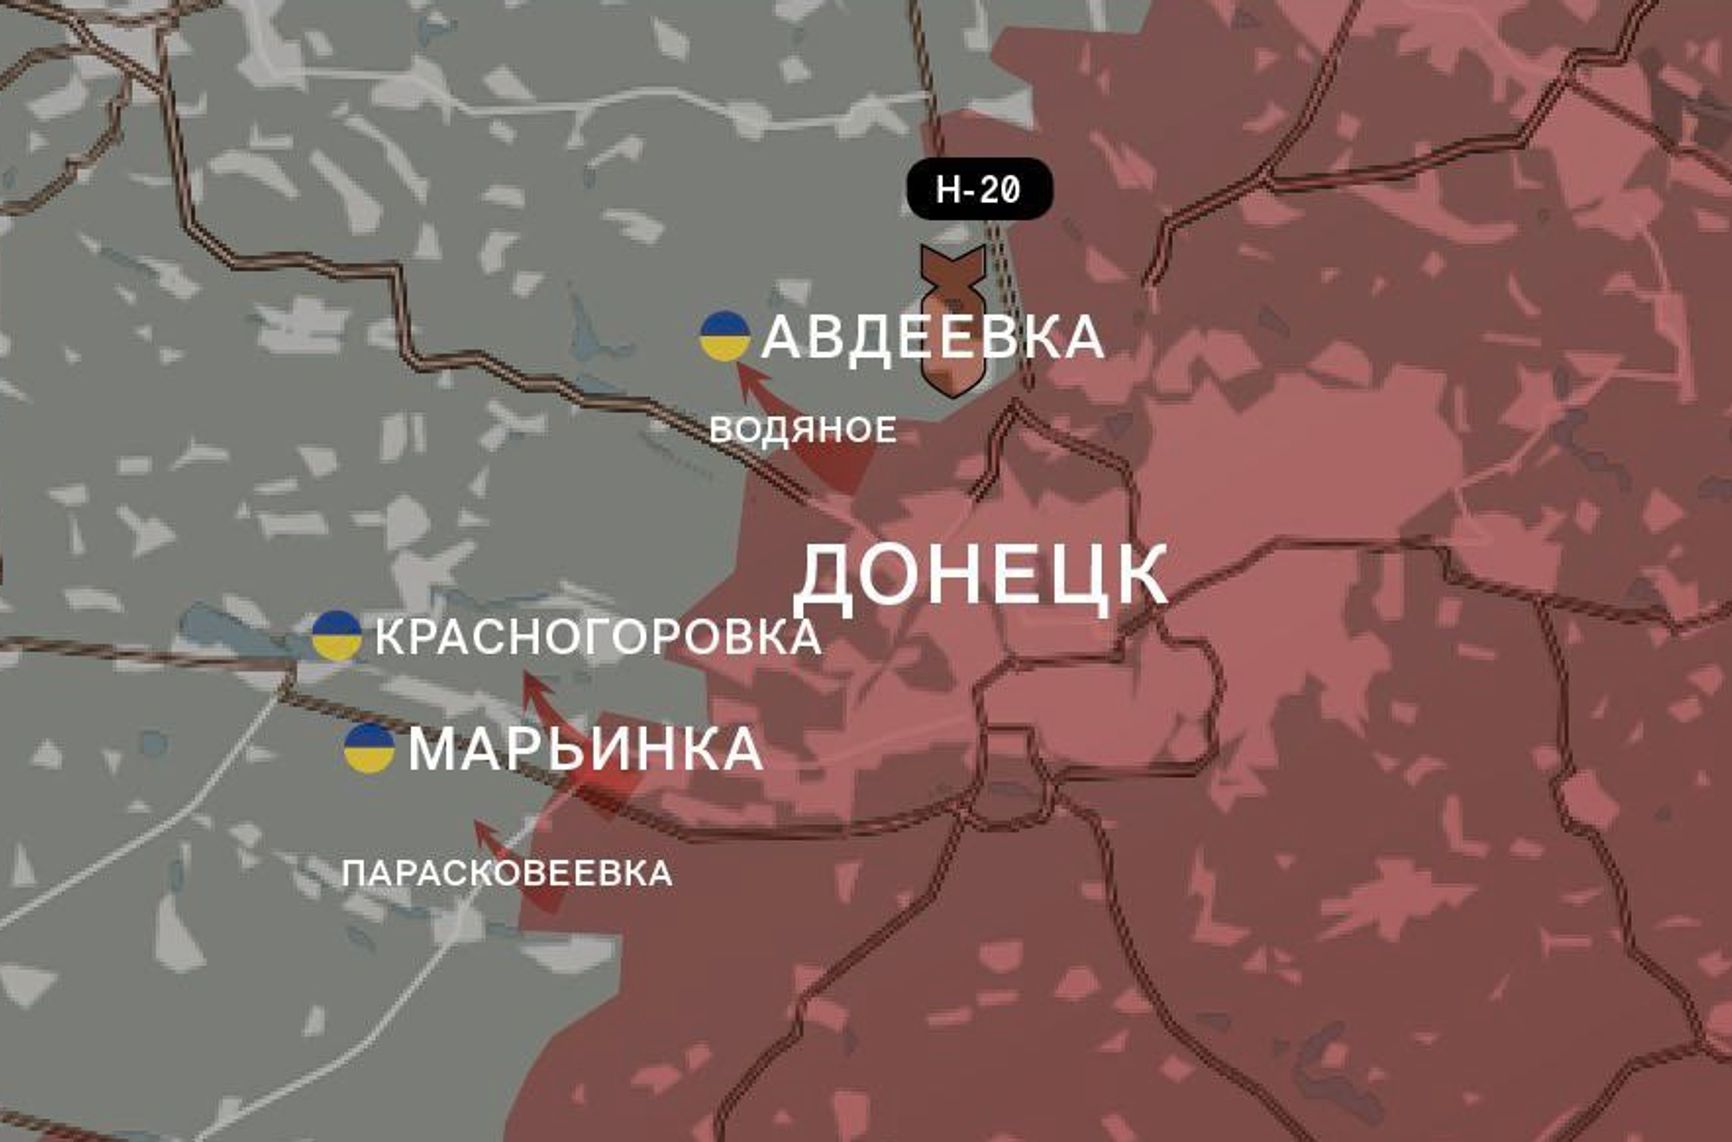 ВС РФ атакуют Запорожье, вагнеровцы пытаются взять в кольцо Бахмут. Что происходит на линии фронта